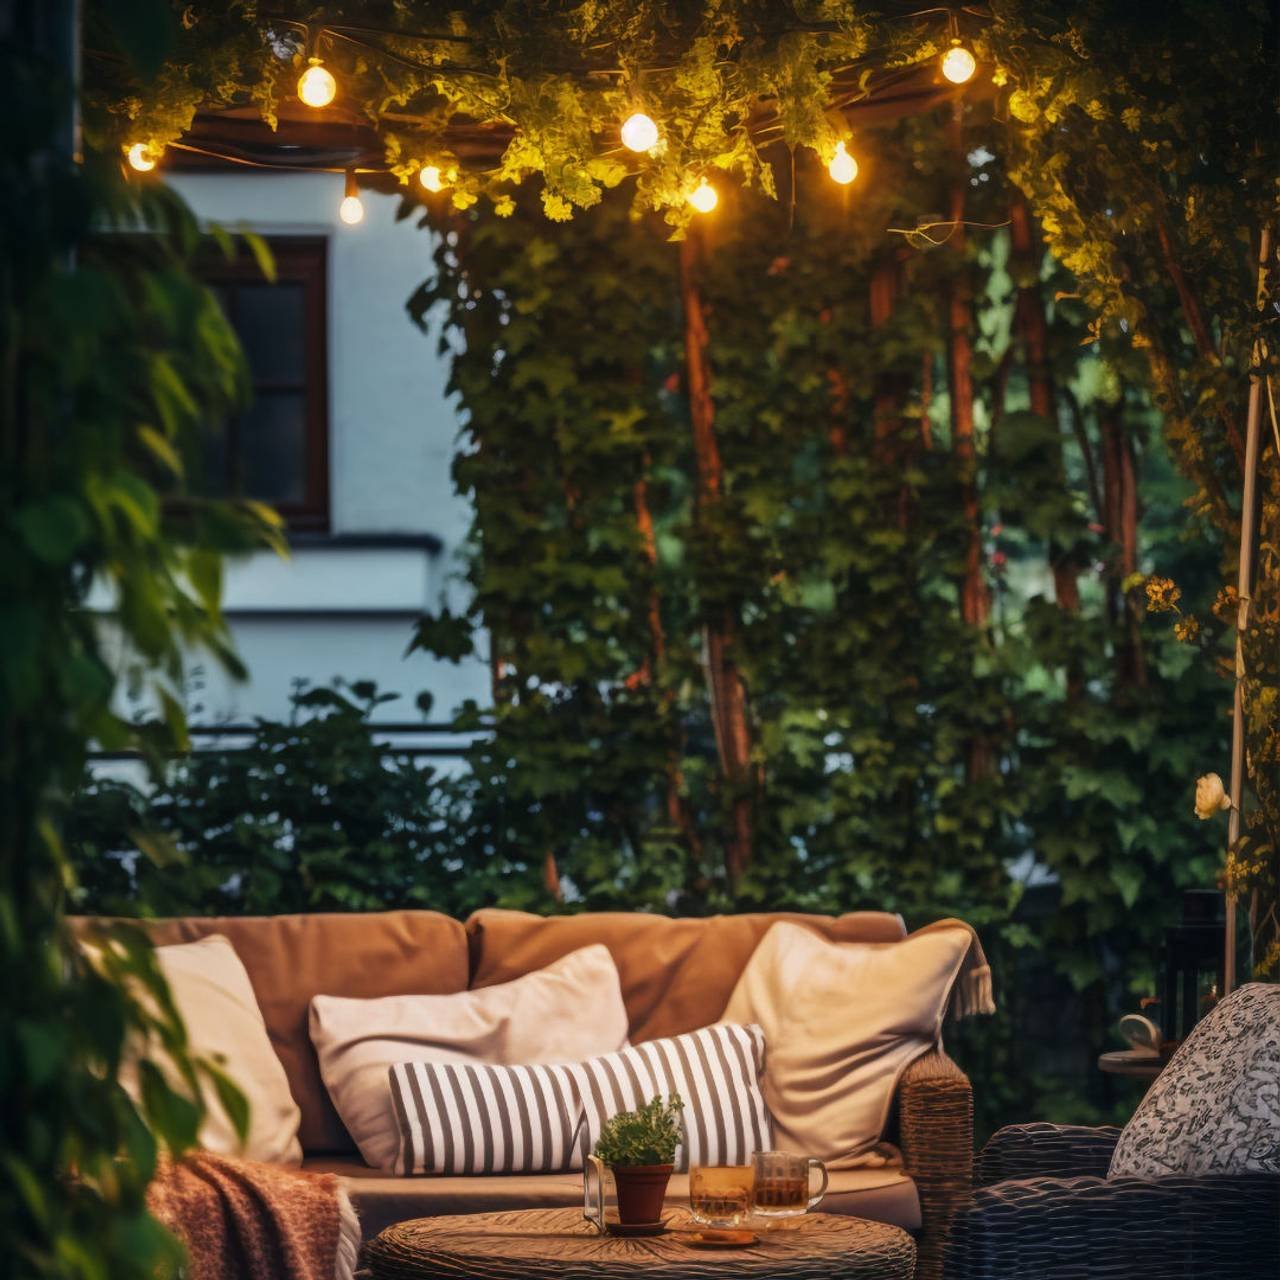 mobilia de patio rustica no deck da casa com vegetacao